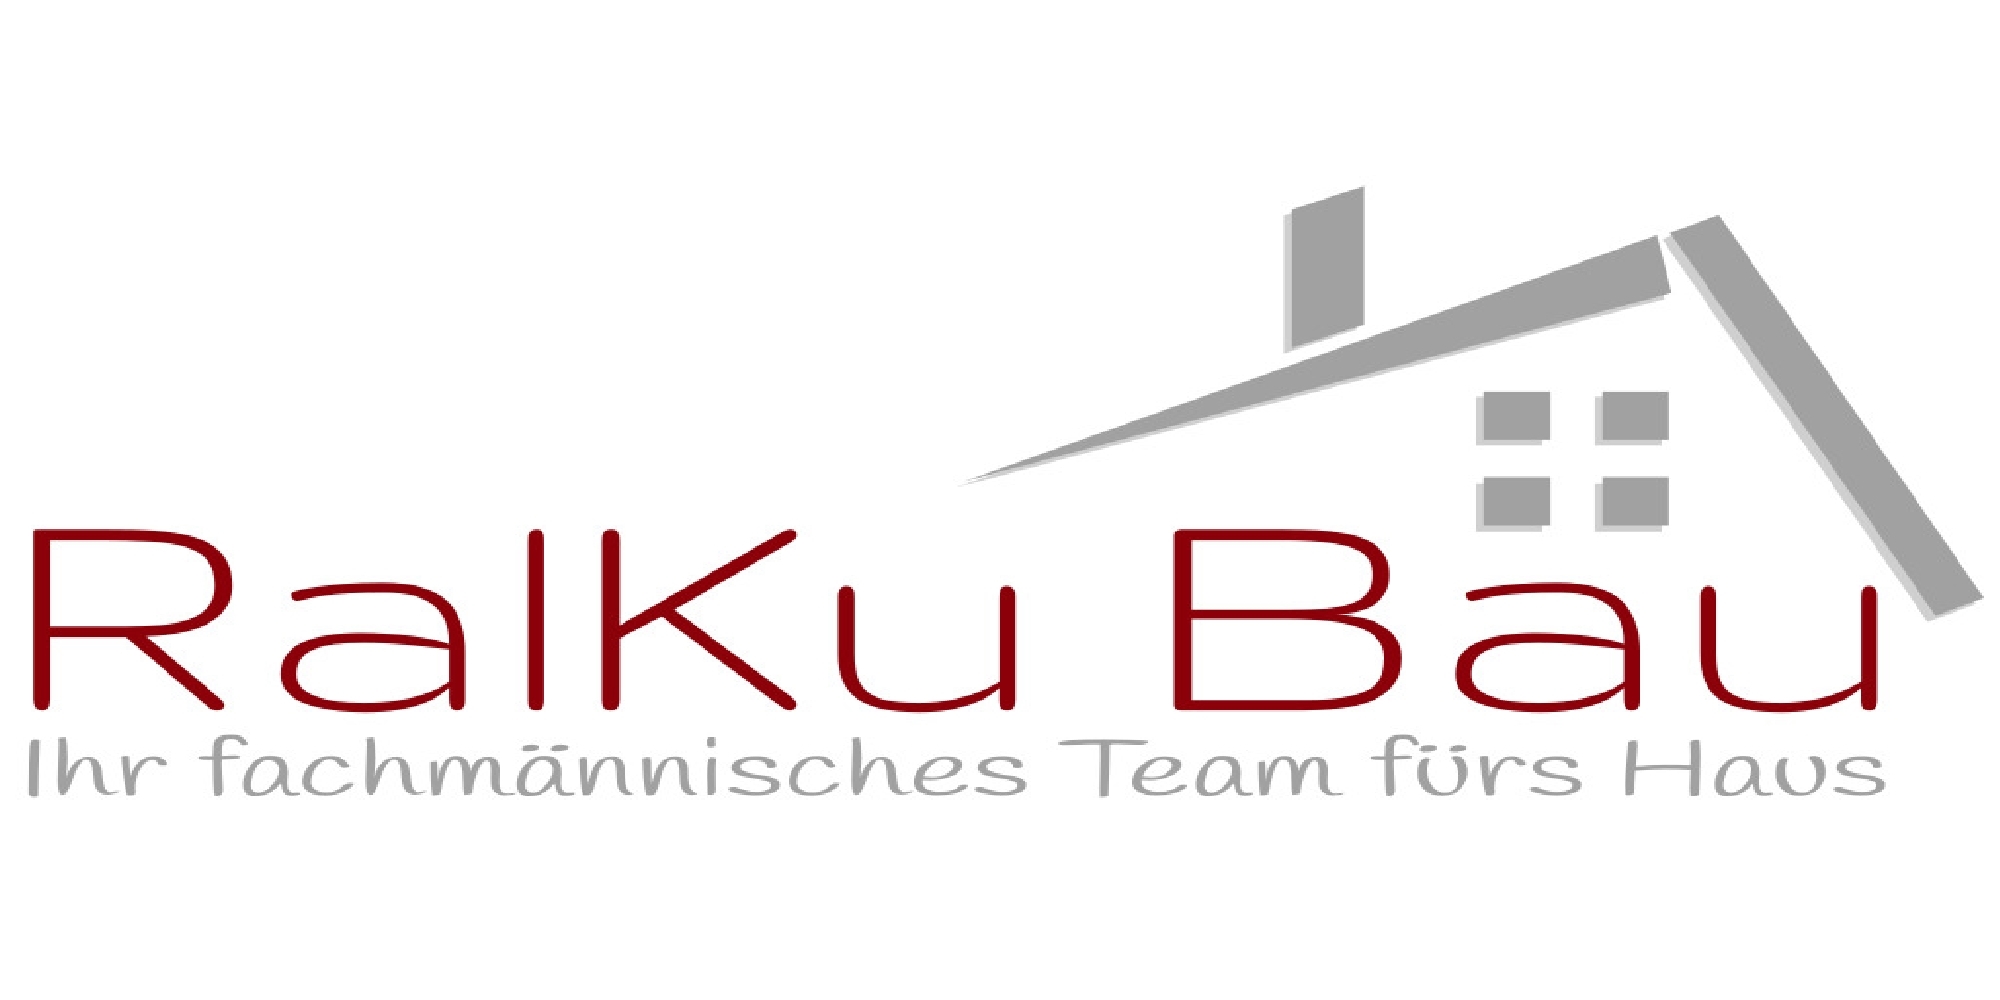 Ralf Kurka Logo